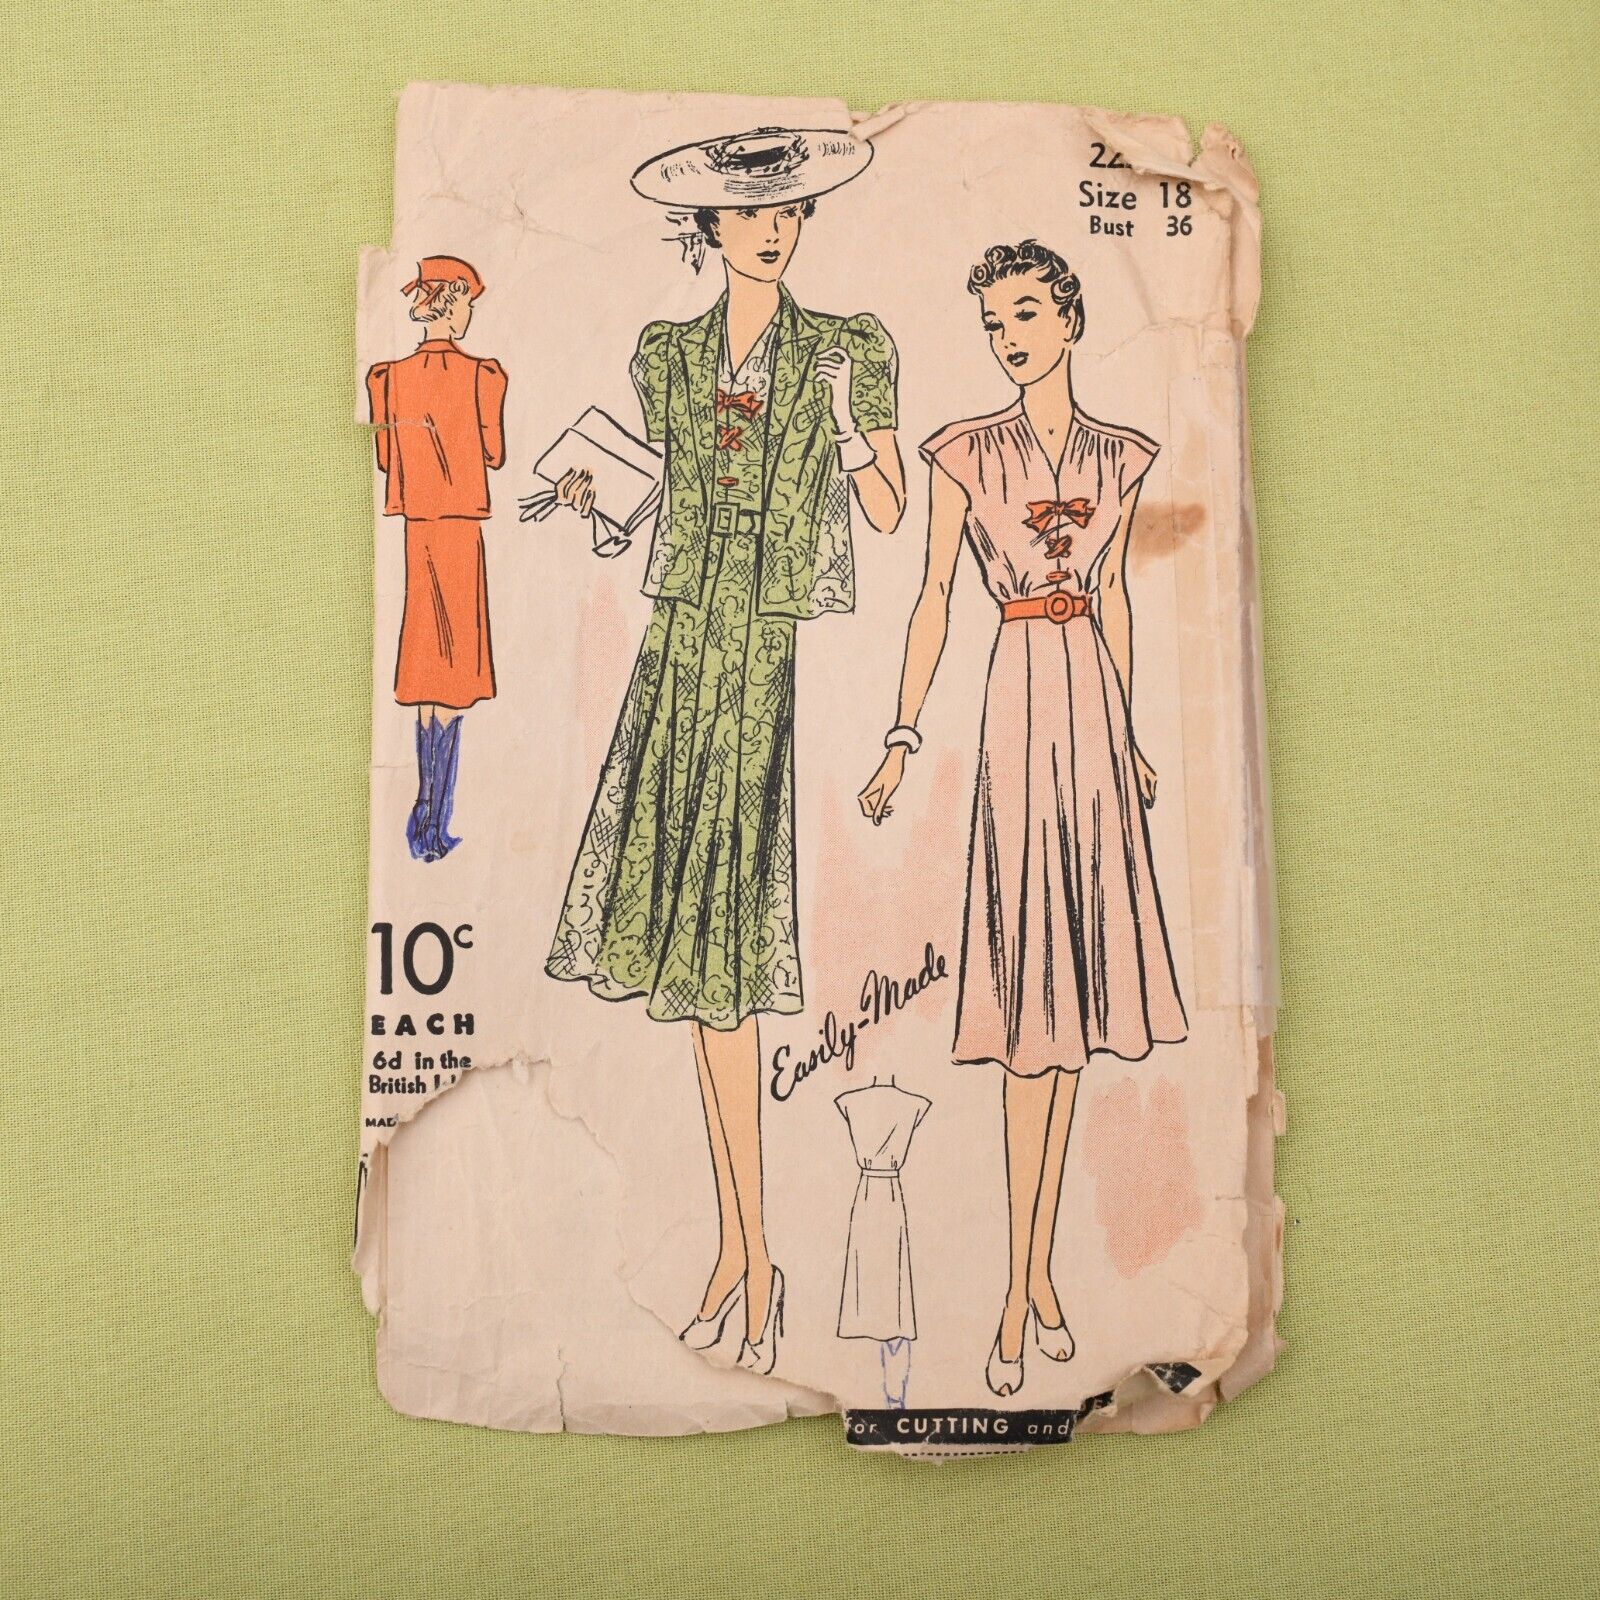 Vintage 1930s Du Barry Dress & Jacket Sewing Pattern - 2224B - Bust 36 Complete